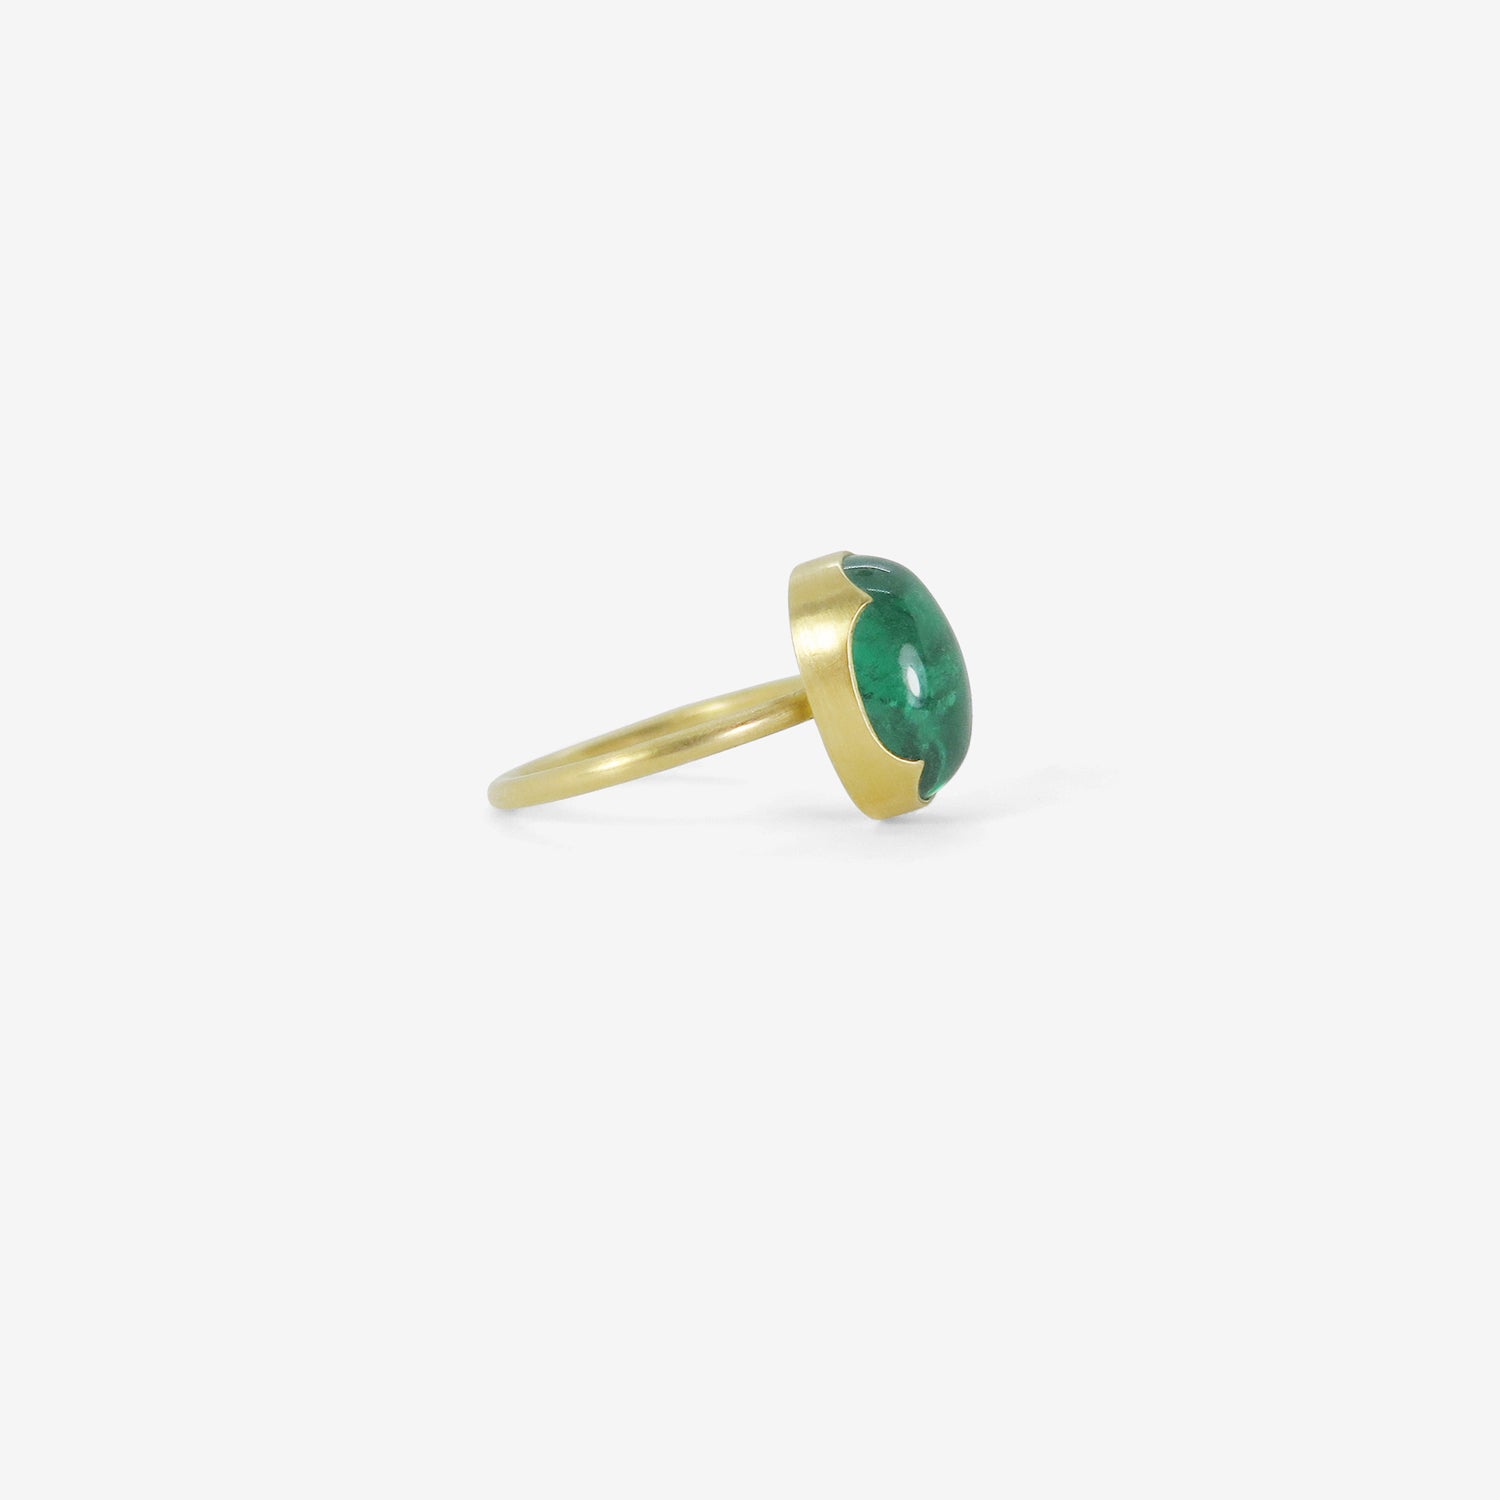 August jewelry Gabriella Kiss oval cabochon zambian emerald ring 4.75ct side